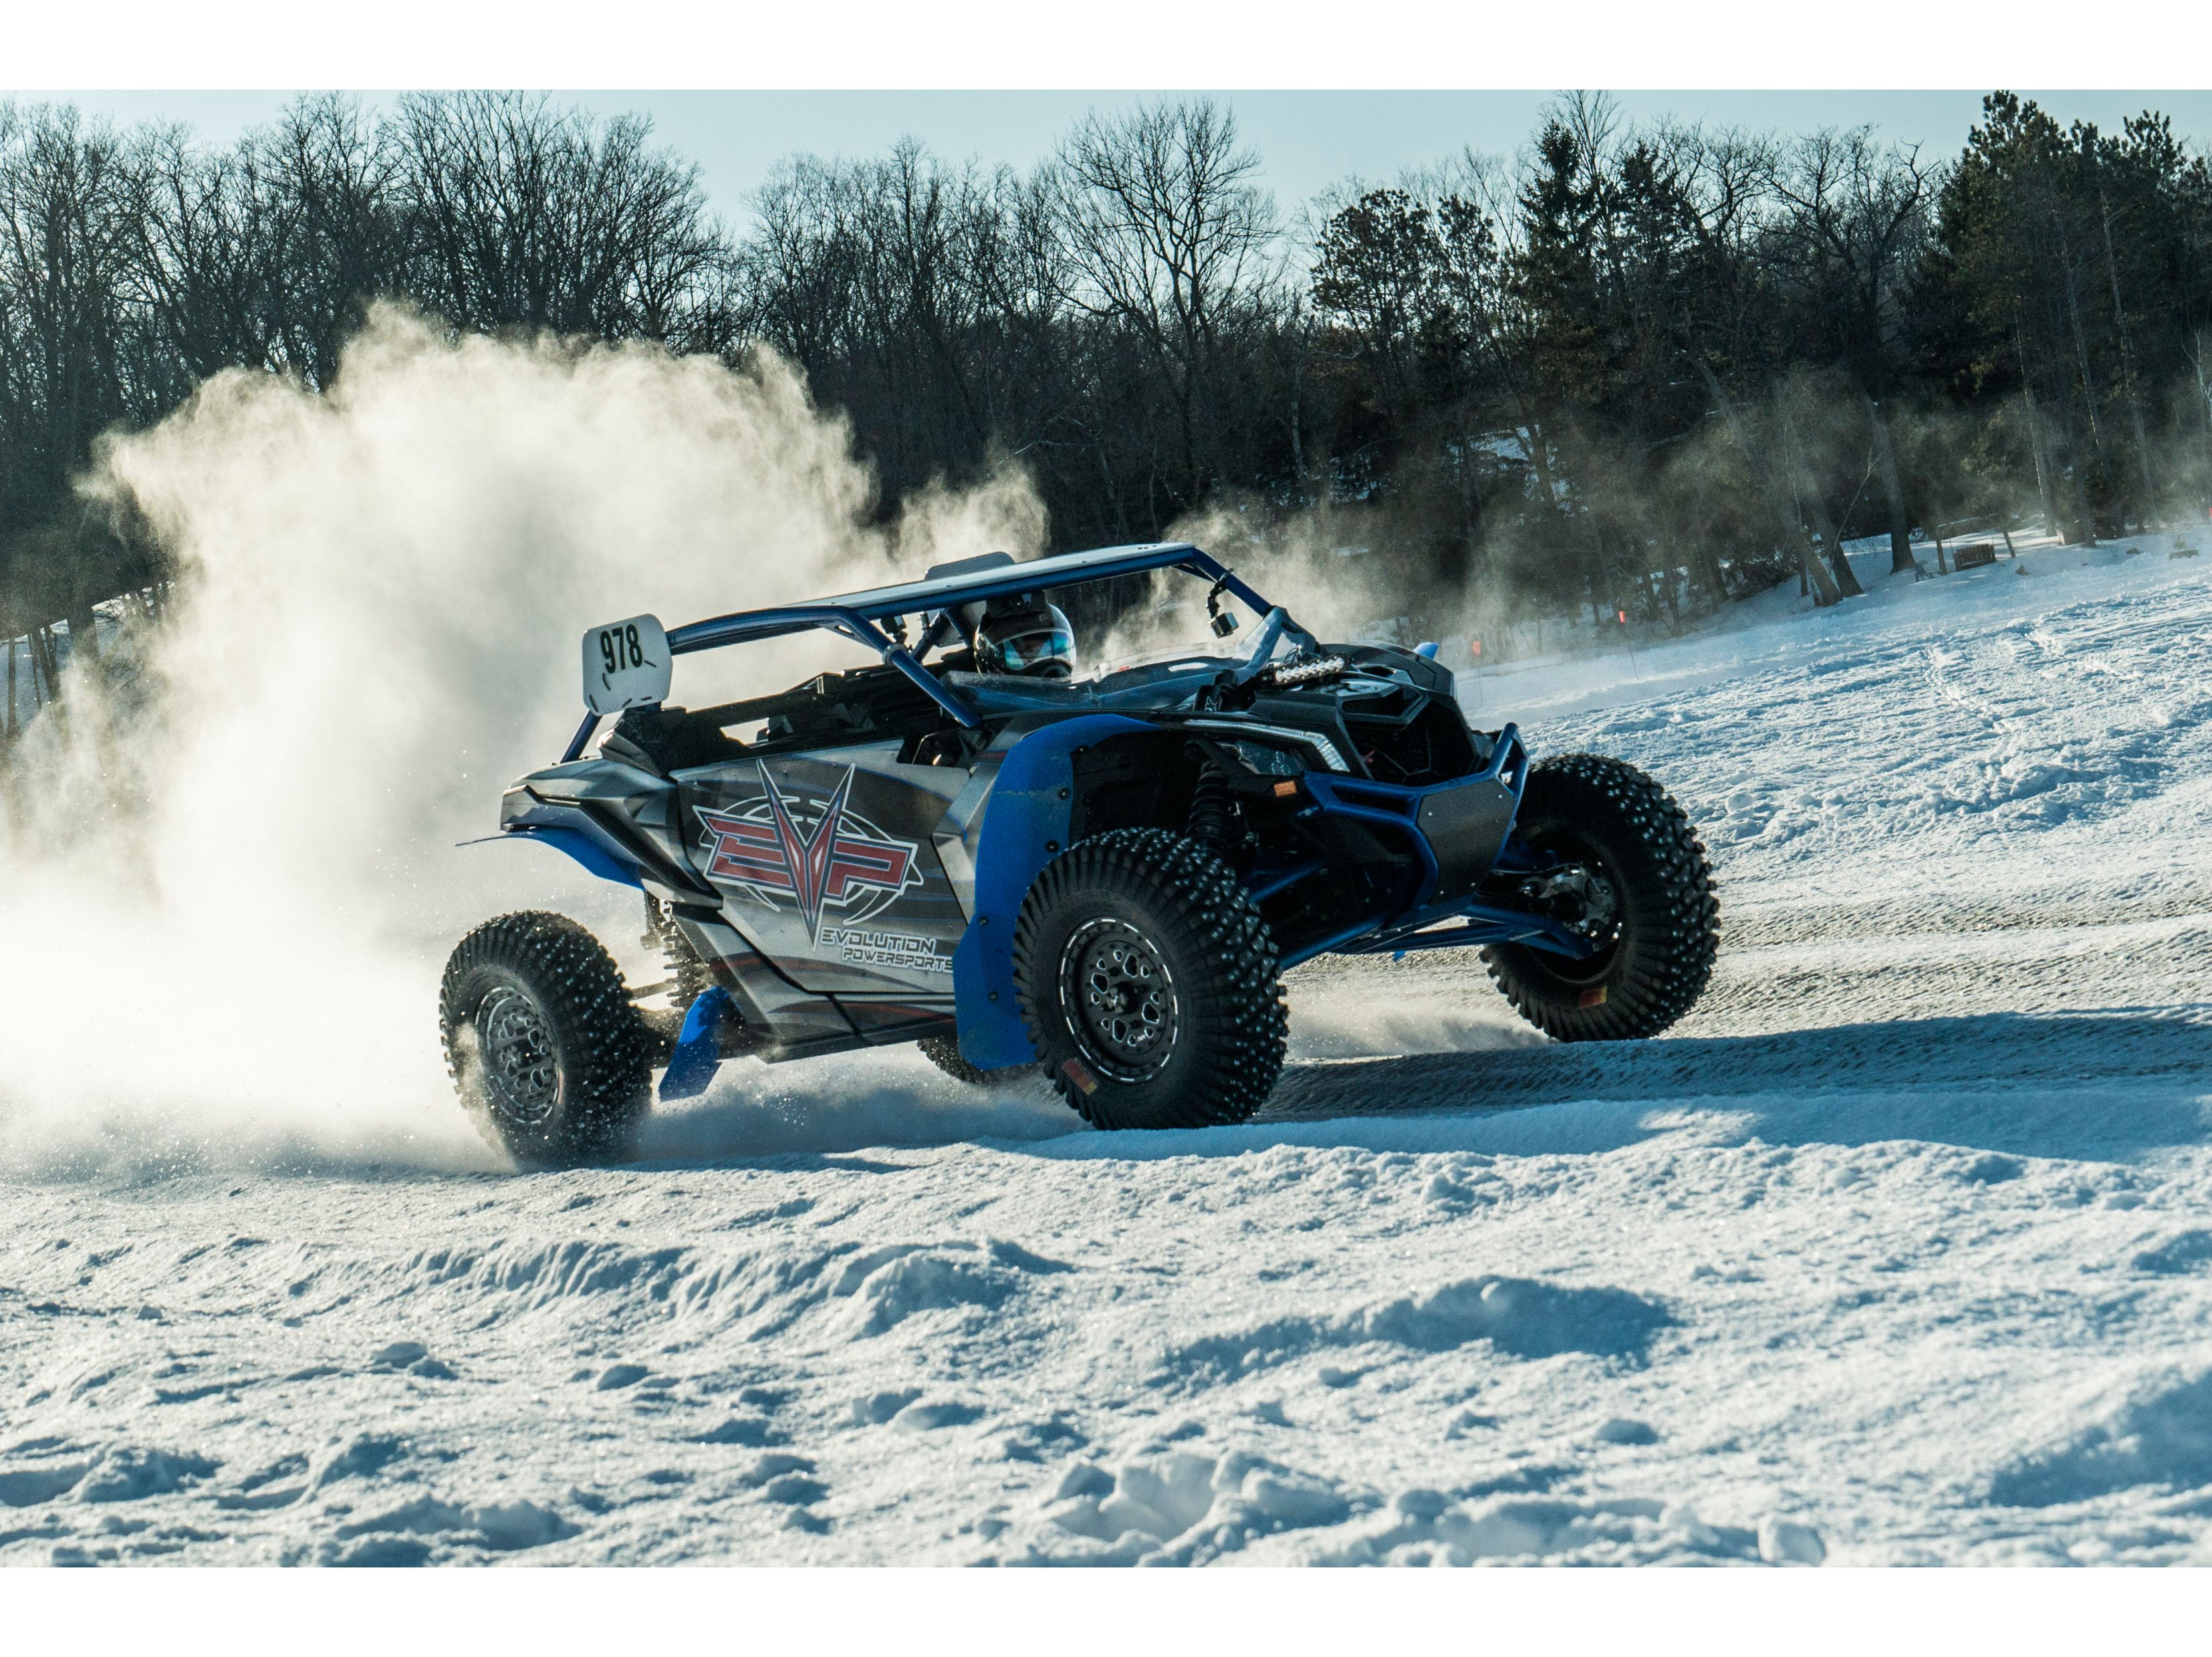 Dustin Jones conduce sobre un sendero de nieve con su Can-Am SxS